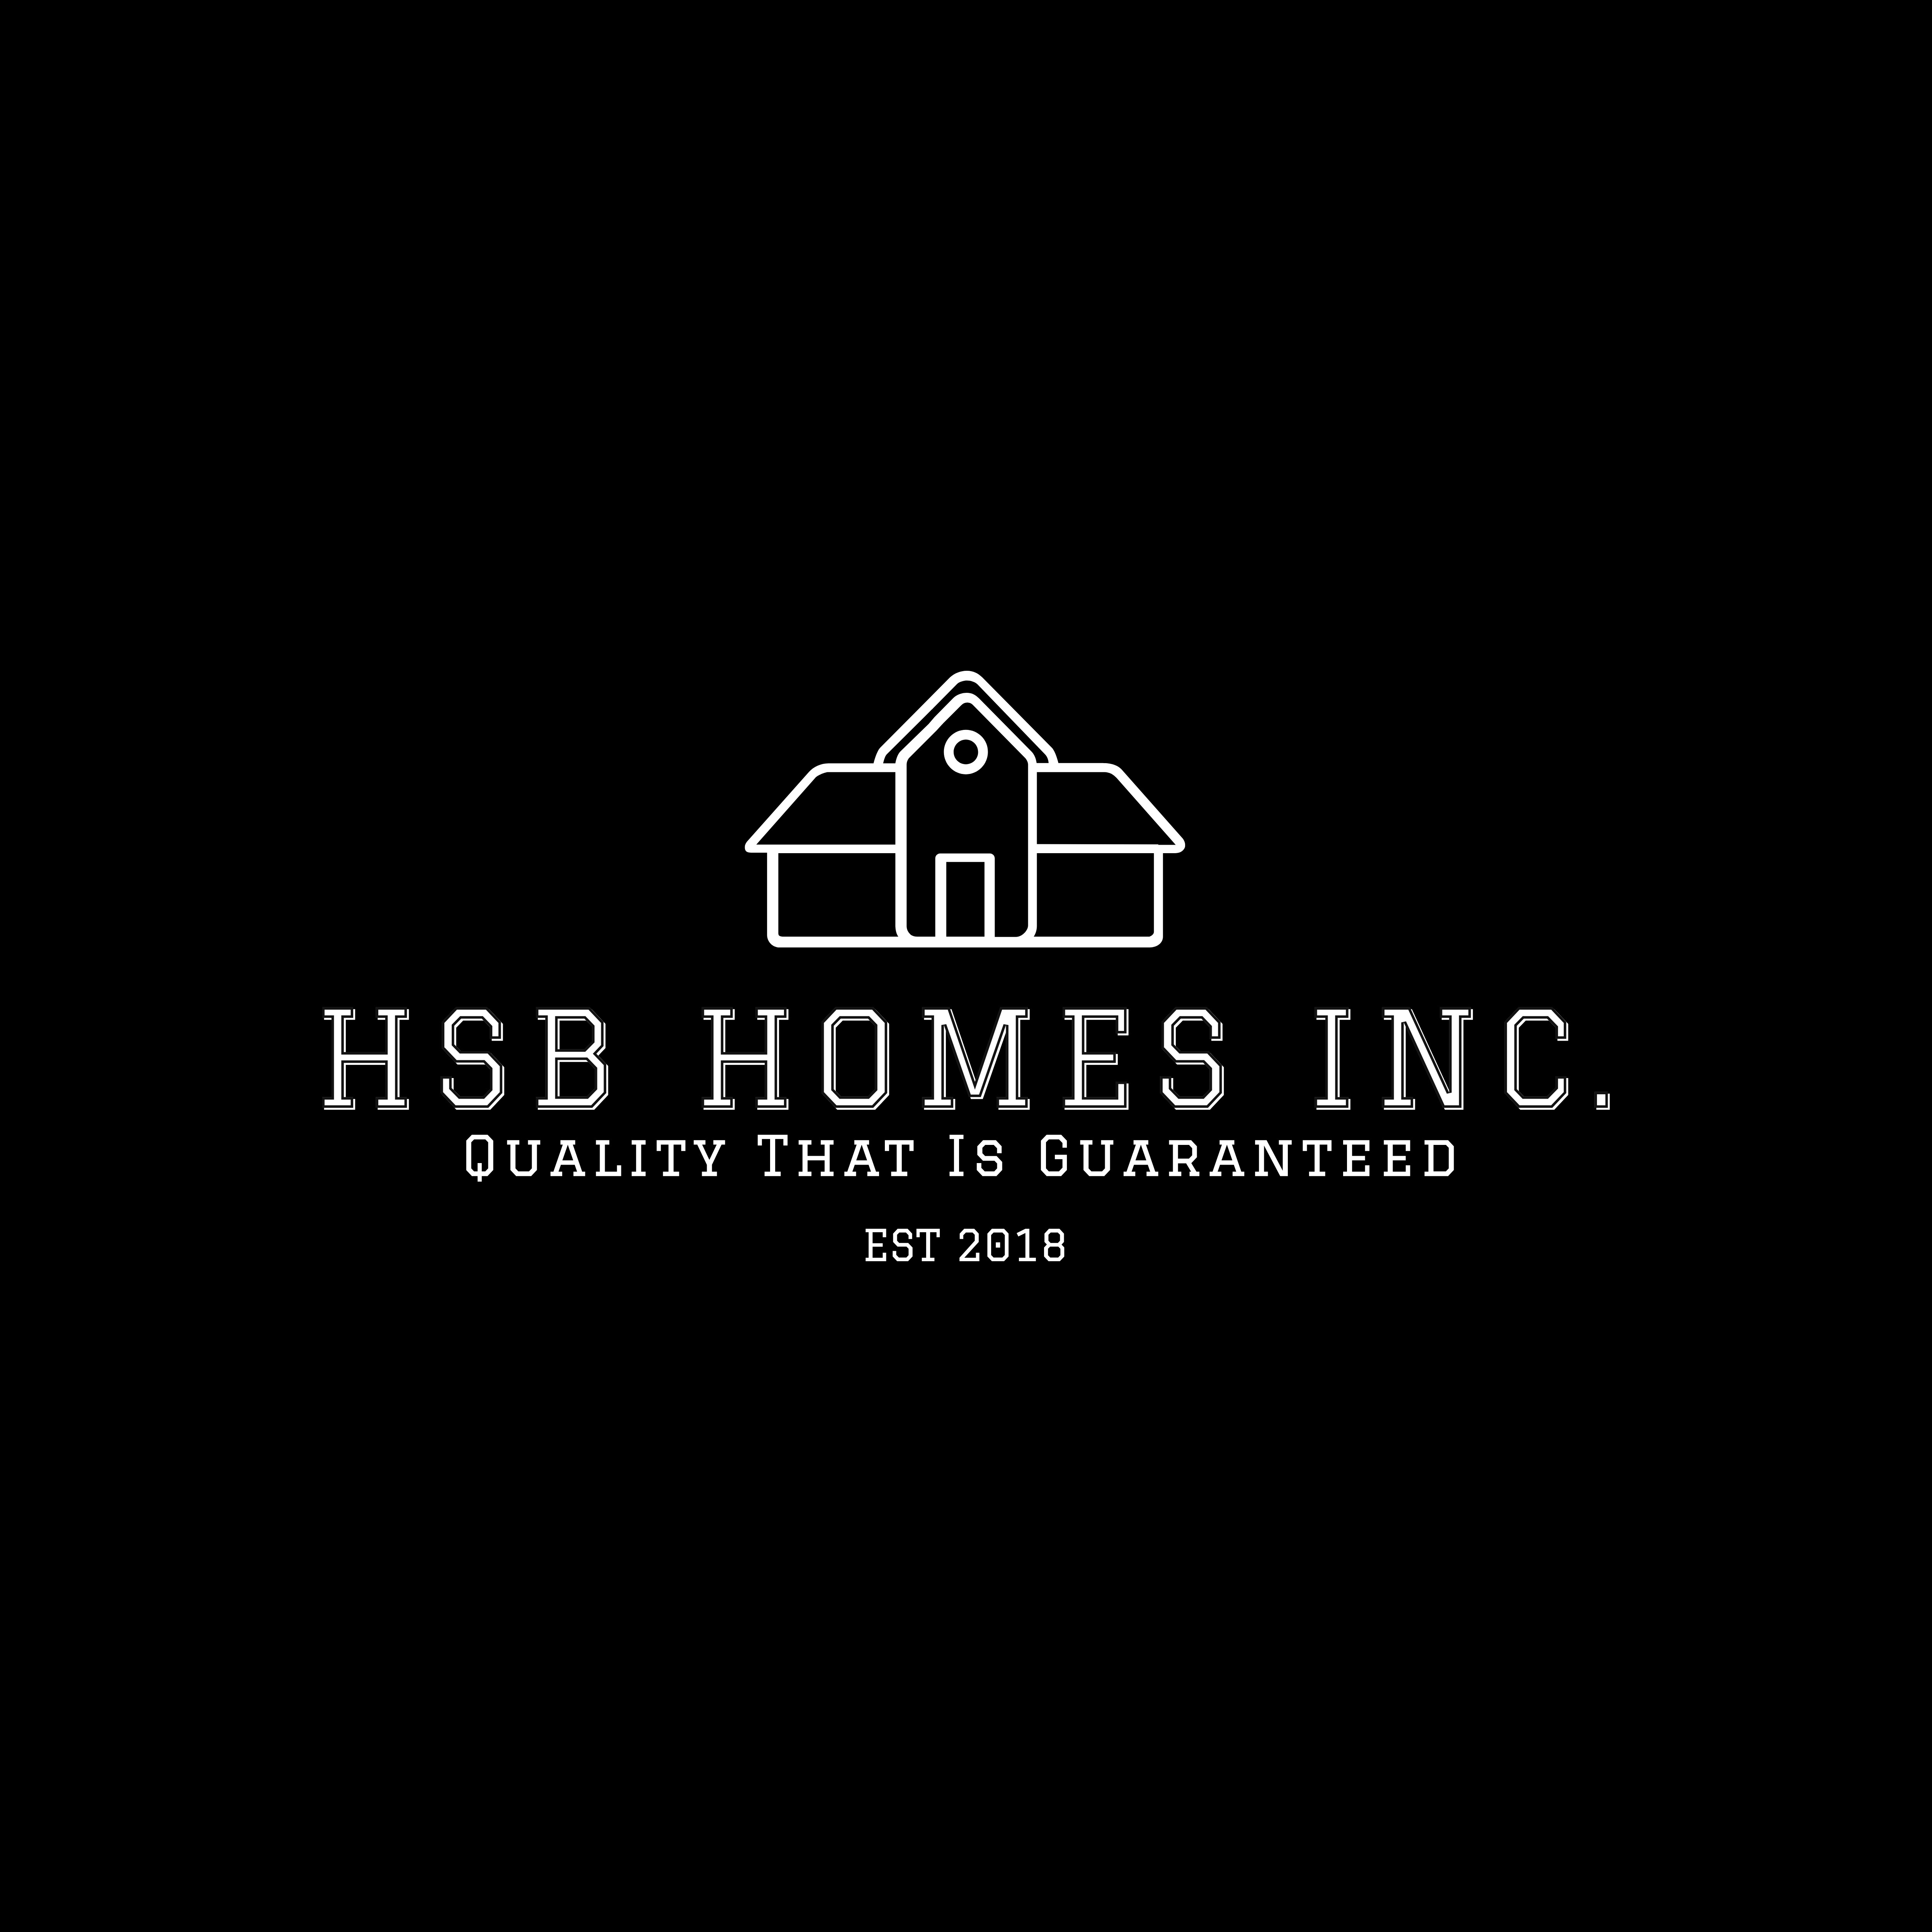 HSB Homes Inc.'s logo